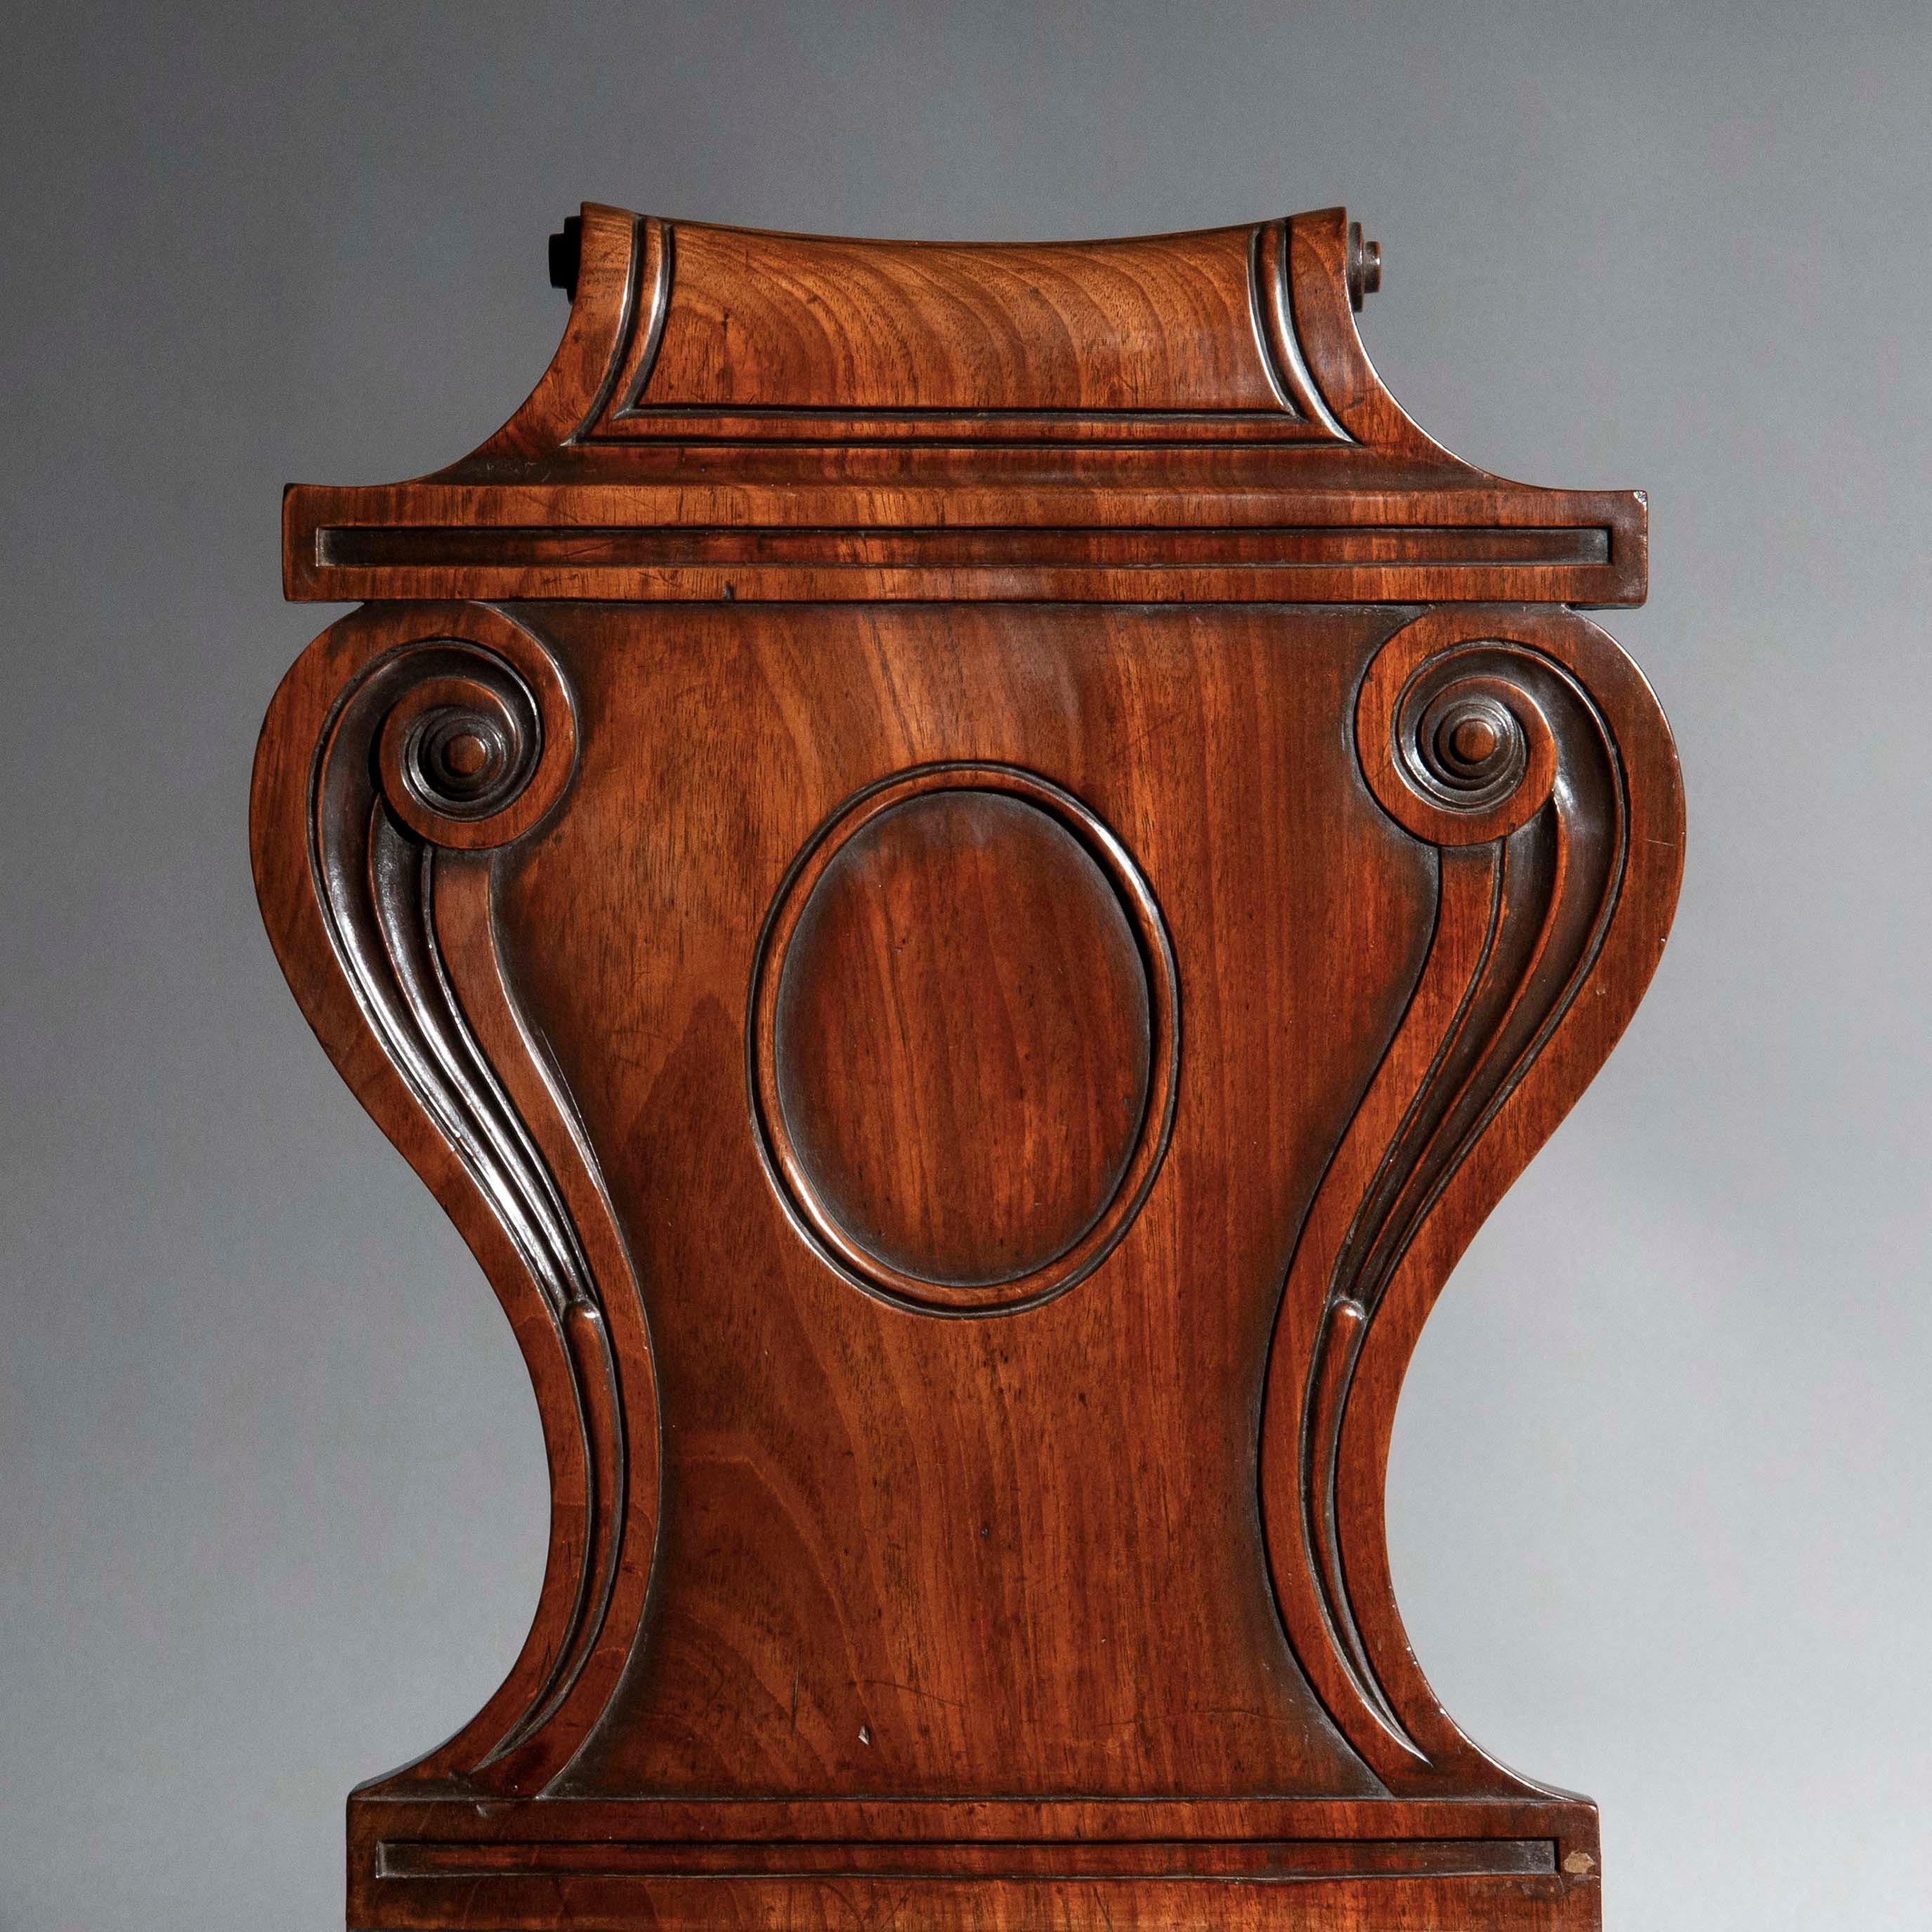 Une belle paire de chaises de salle de la période Regency, attribuée à Thomas Banting et William France.
Angleterre, vers 1820.

Pourquoi nous les aimons
Ces chaises d'apparat de qualité présentent des dossiers à cartouches particulièrement élégants